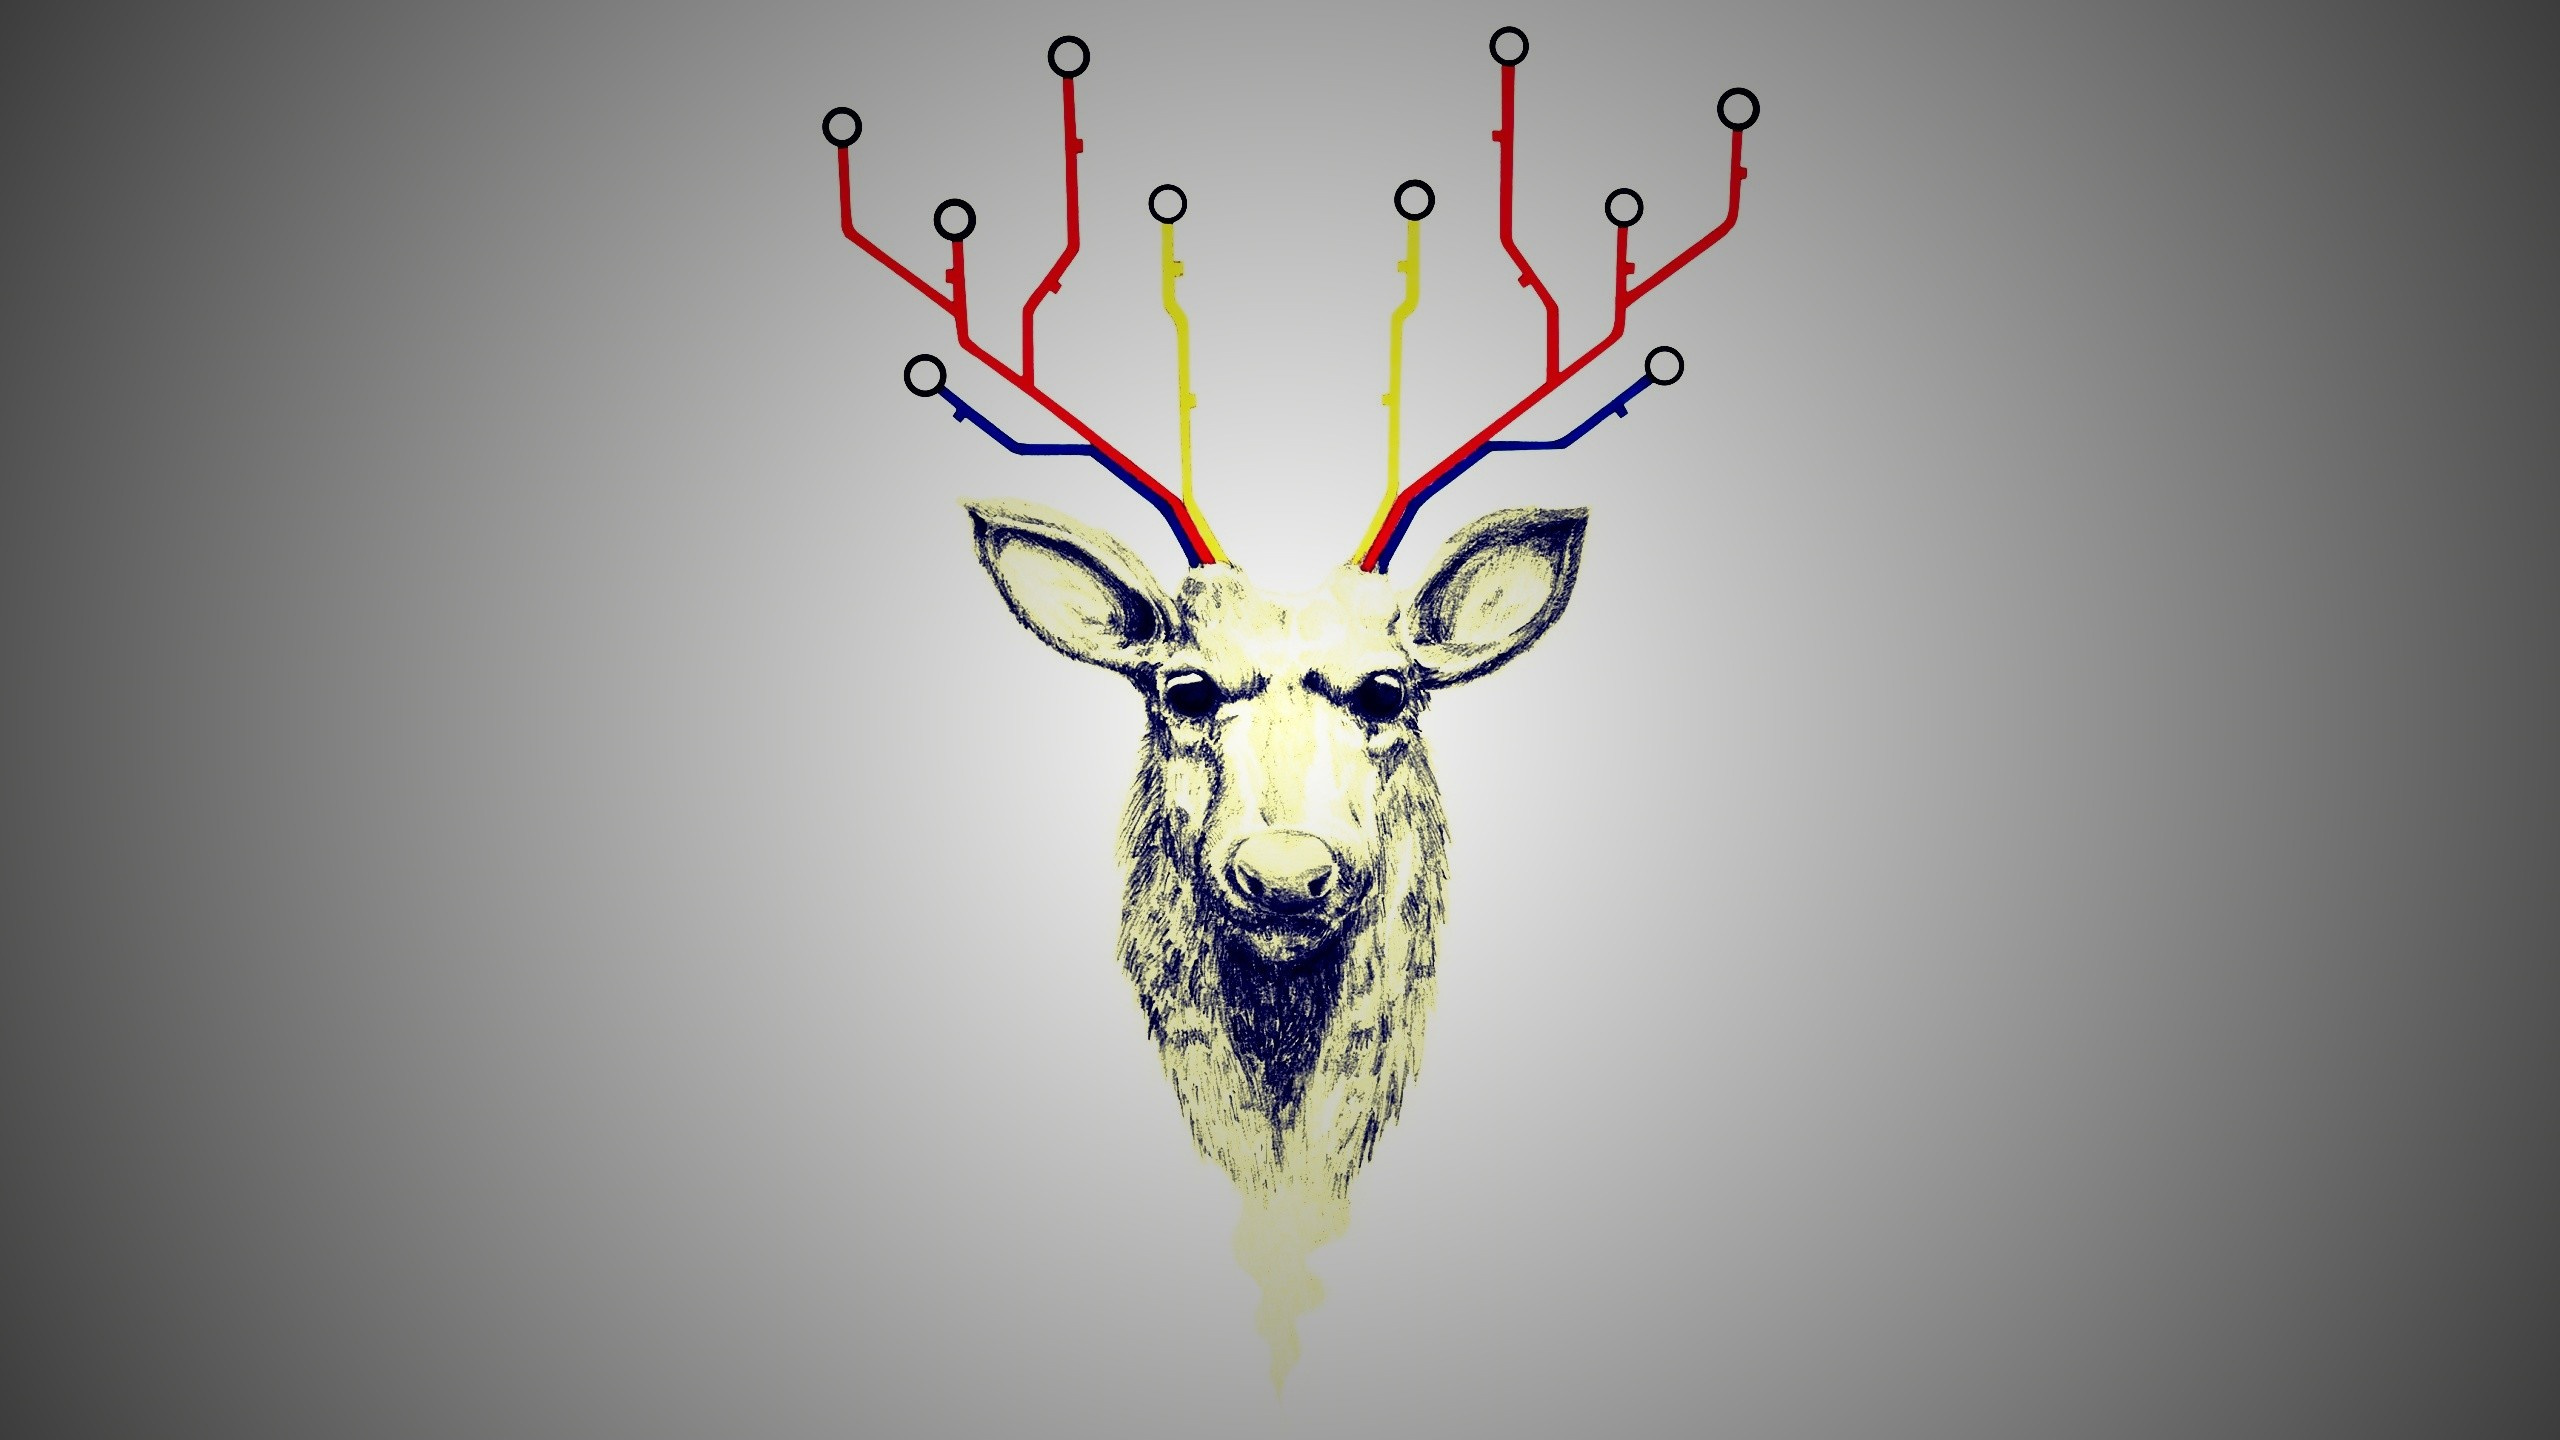 鹿角, 驯鹿, 图形设计, 喇叭 壁纸 2560x1440 允许